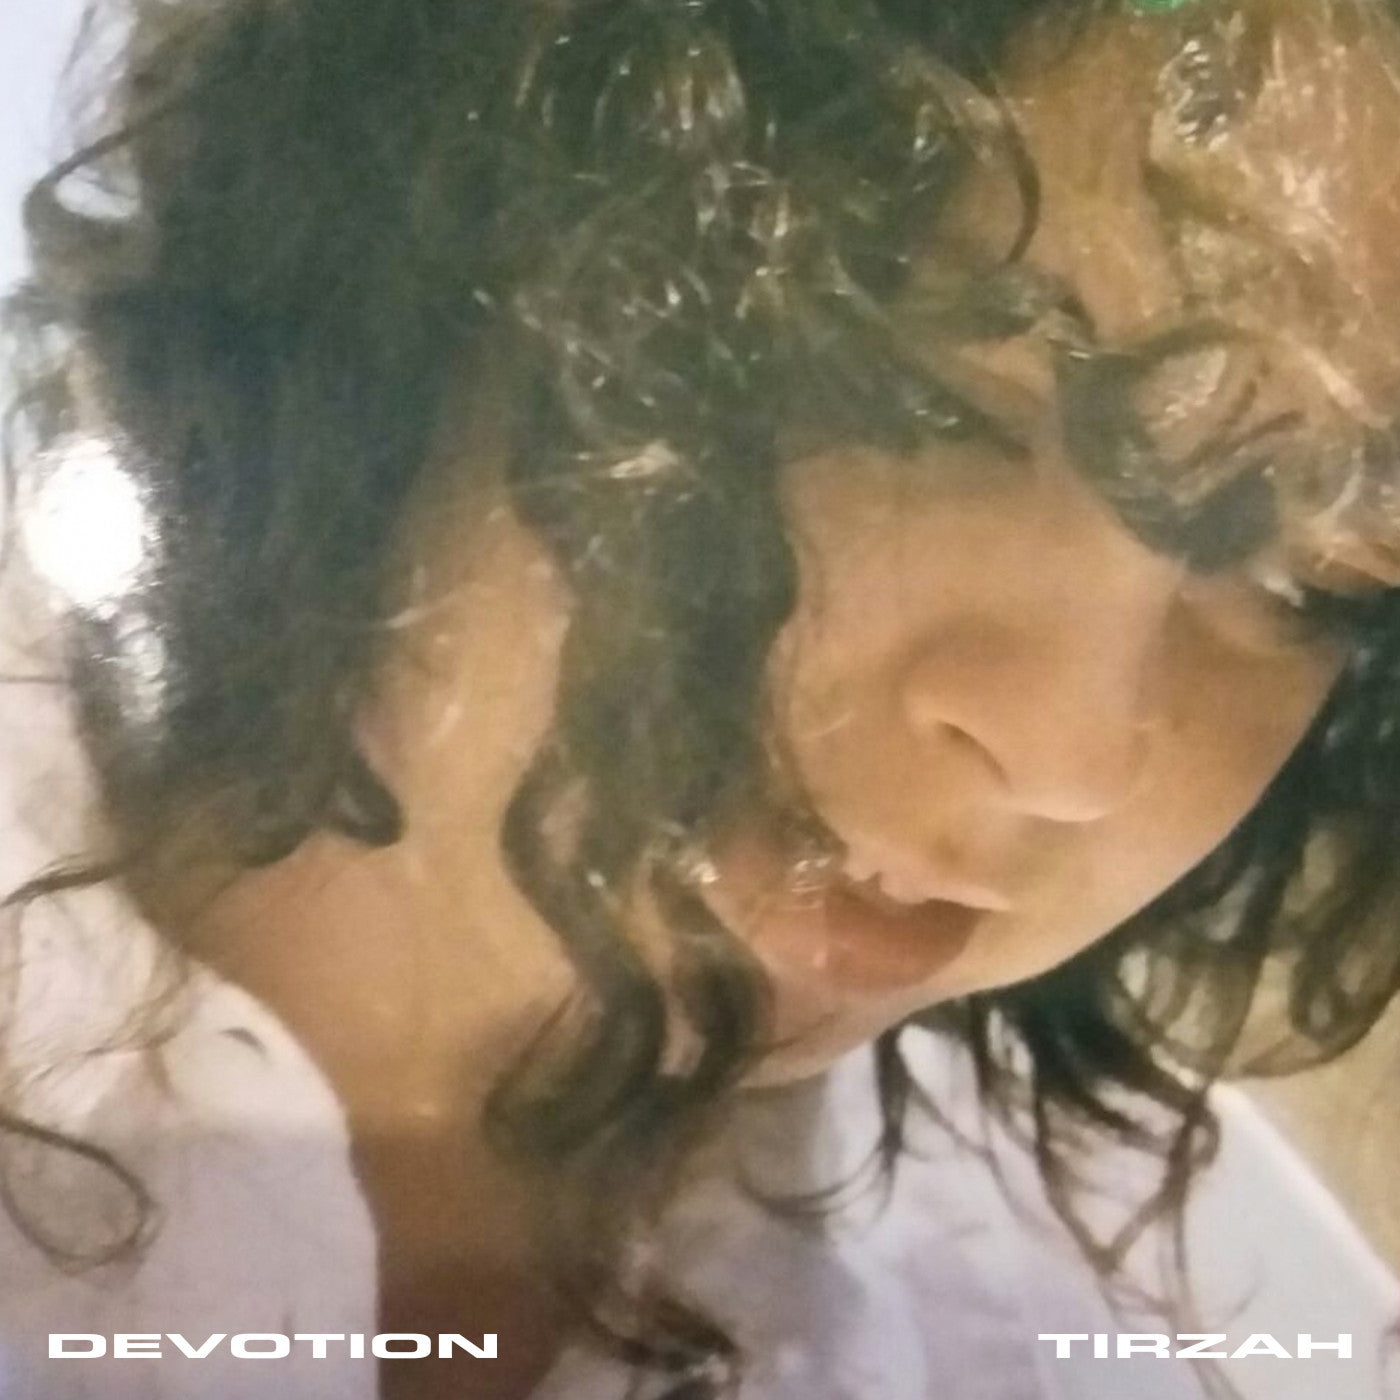 TIRZAH - DEVOTION Vinyl LP